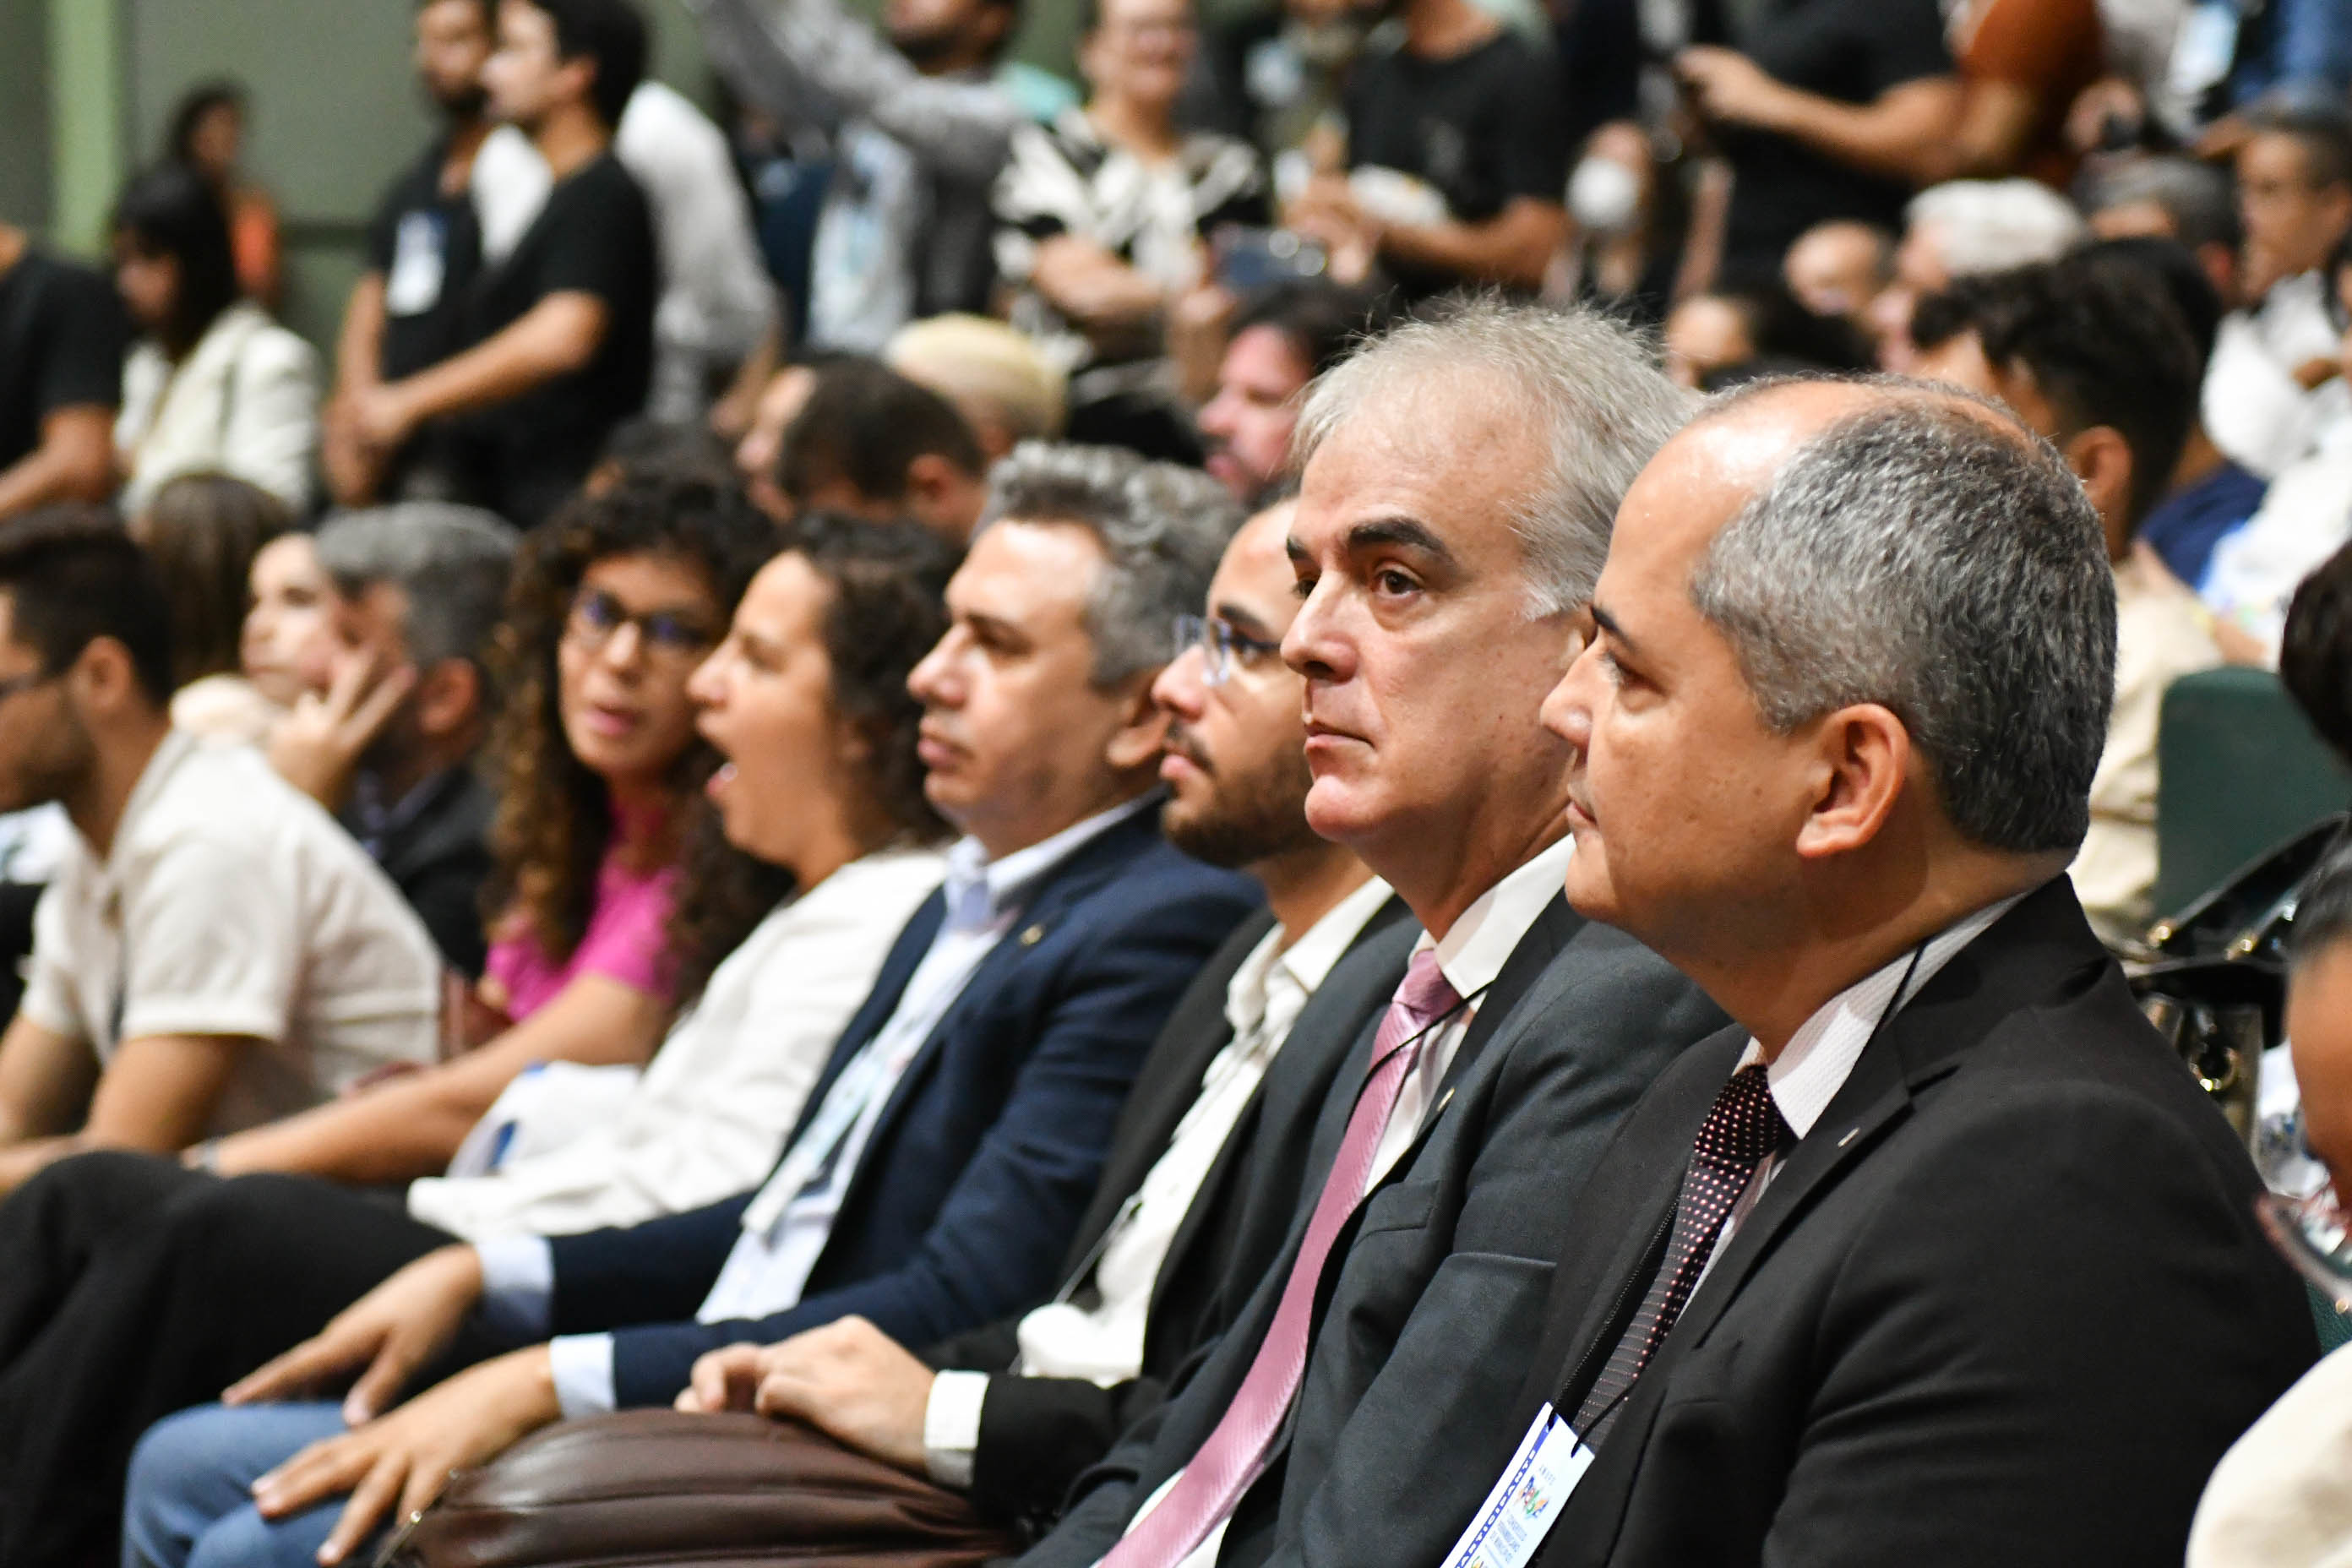 Fotografia do PGJ sentado em meio aos participantes do Congresso